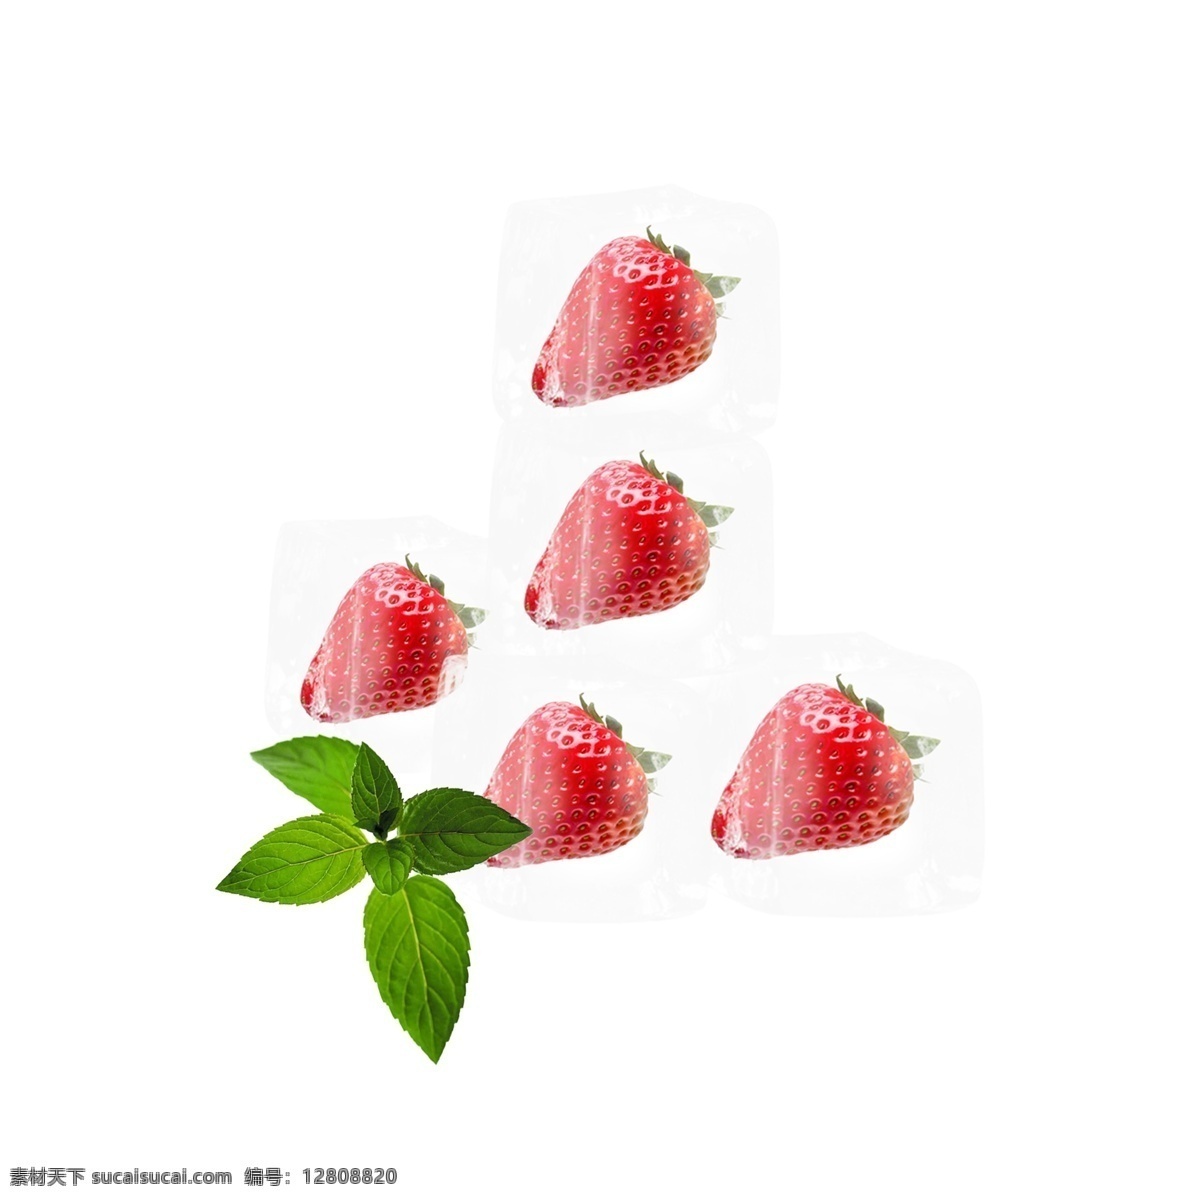 草莓 冰块 冰晶 元素 冰 不规则图形 草莓冰块 绿色树叶 几何冰晶 蓝色冰块 几何冰晶冰块